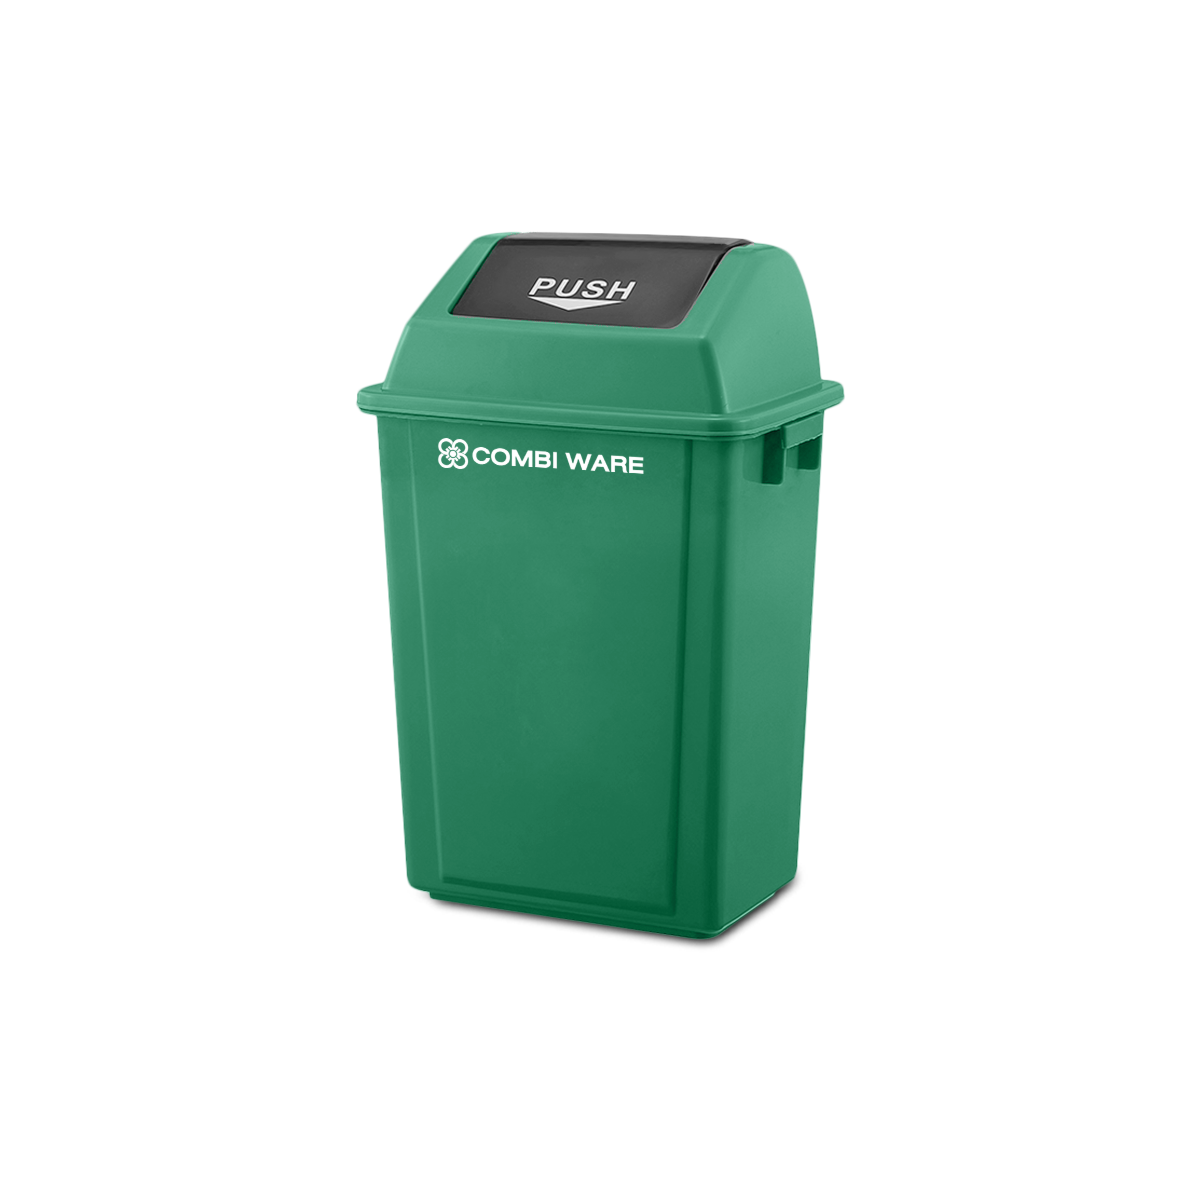 ถังขยะพลาสติก ขนาด 40 ลิตร แบบฝาผลัก สีเขียว